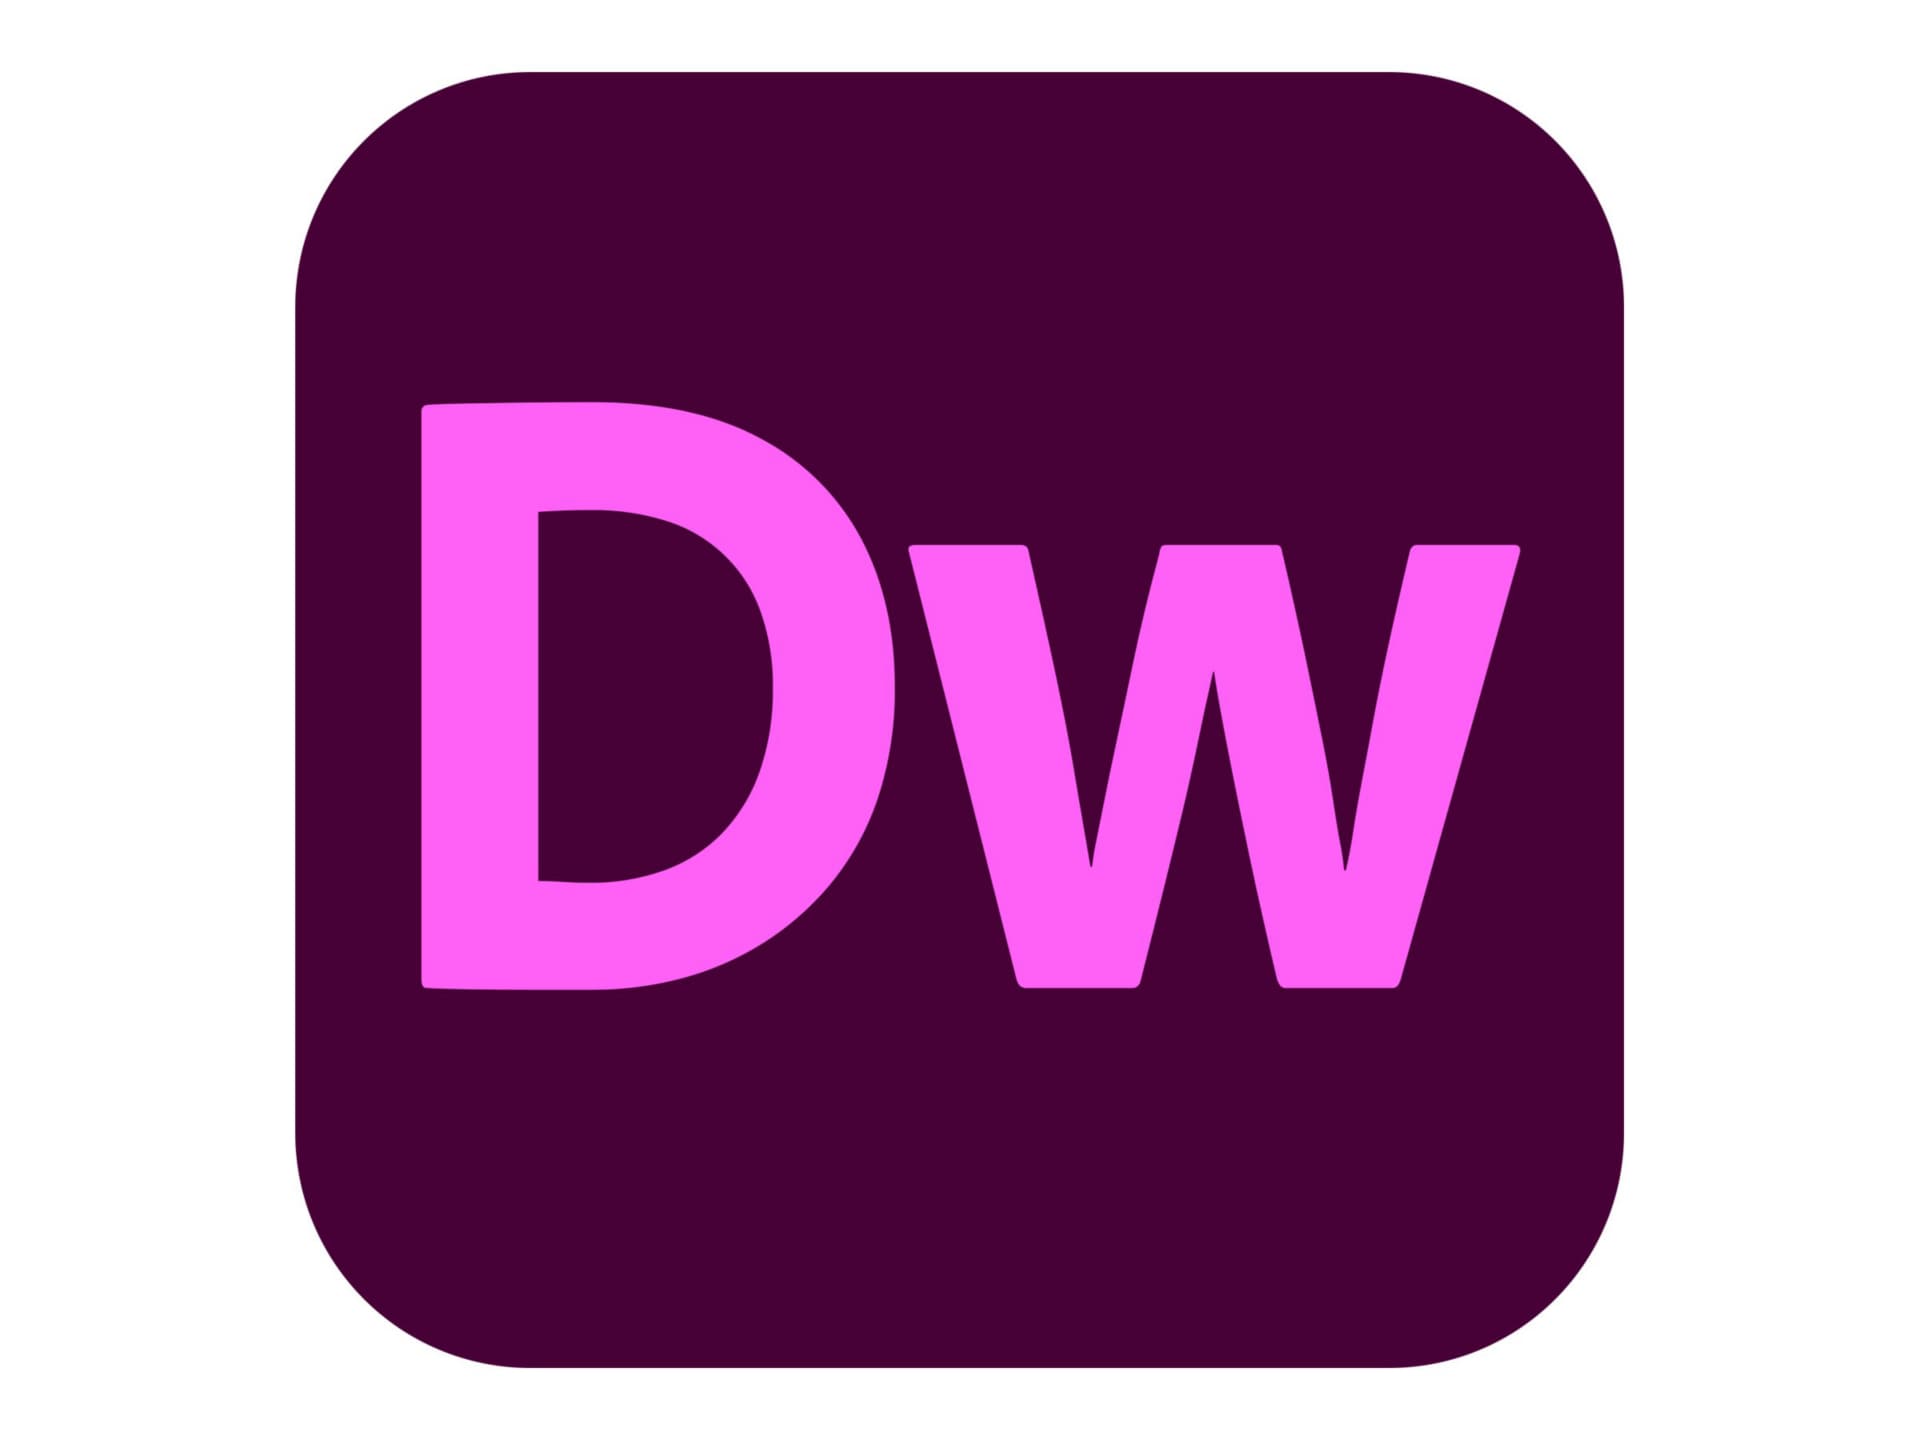 Adobe Dreamweaver CC for Enterprise - Subscription New (10 months) - 1 named user